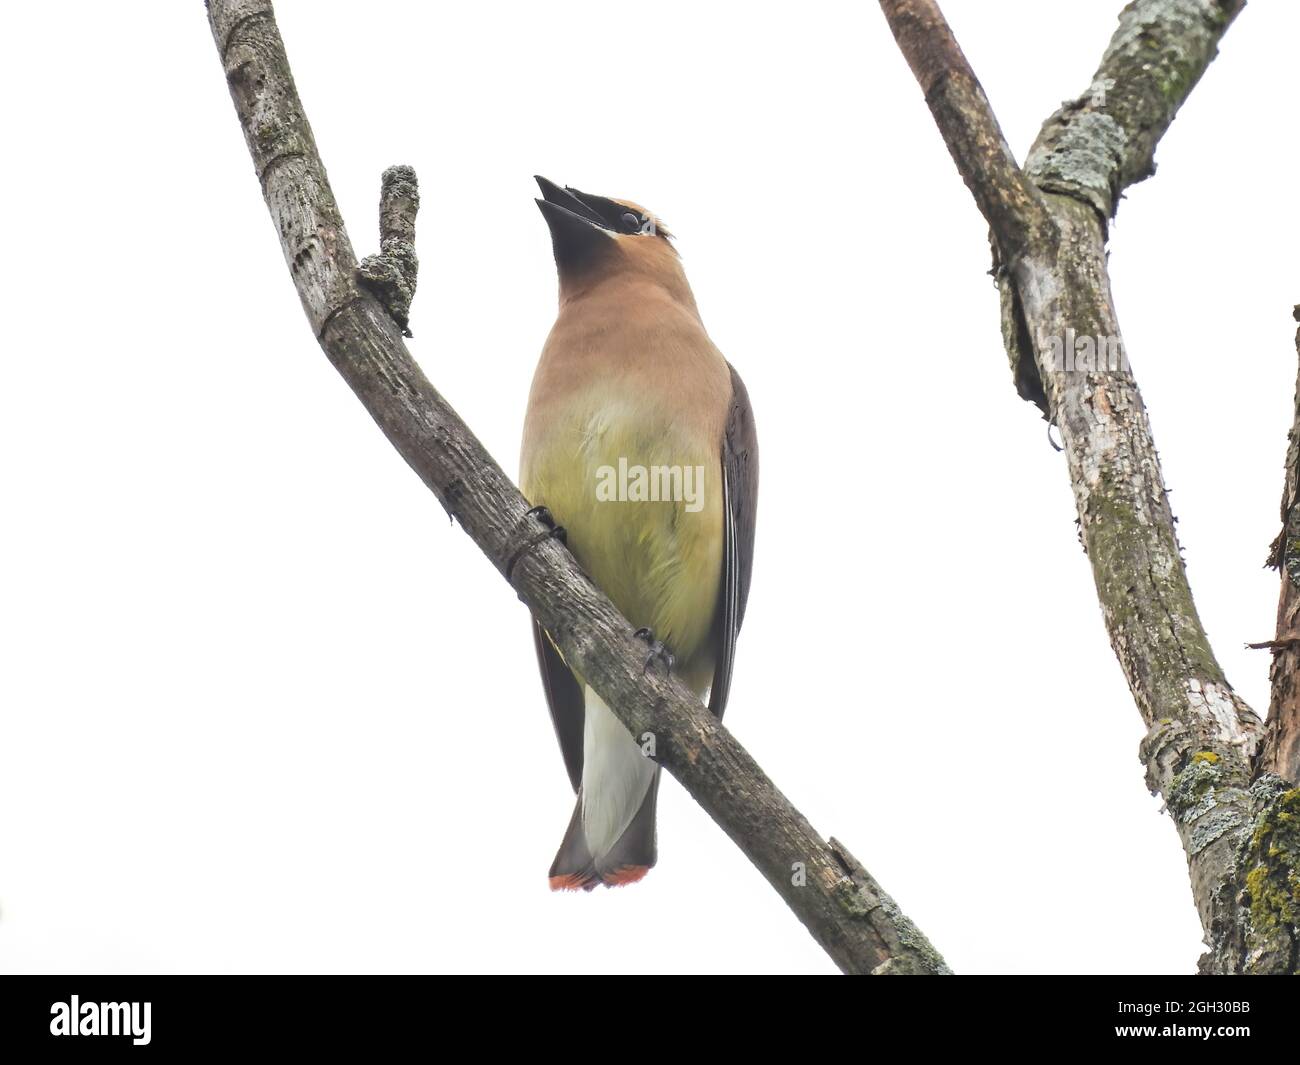 Waxwing on a Branch: Un oiseau de cèdre à la cire chante alors qu'il est perché sur une branche d'arbre par un jour nuageux Banque D'Images